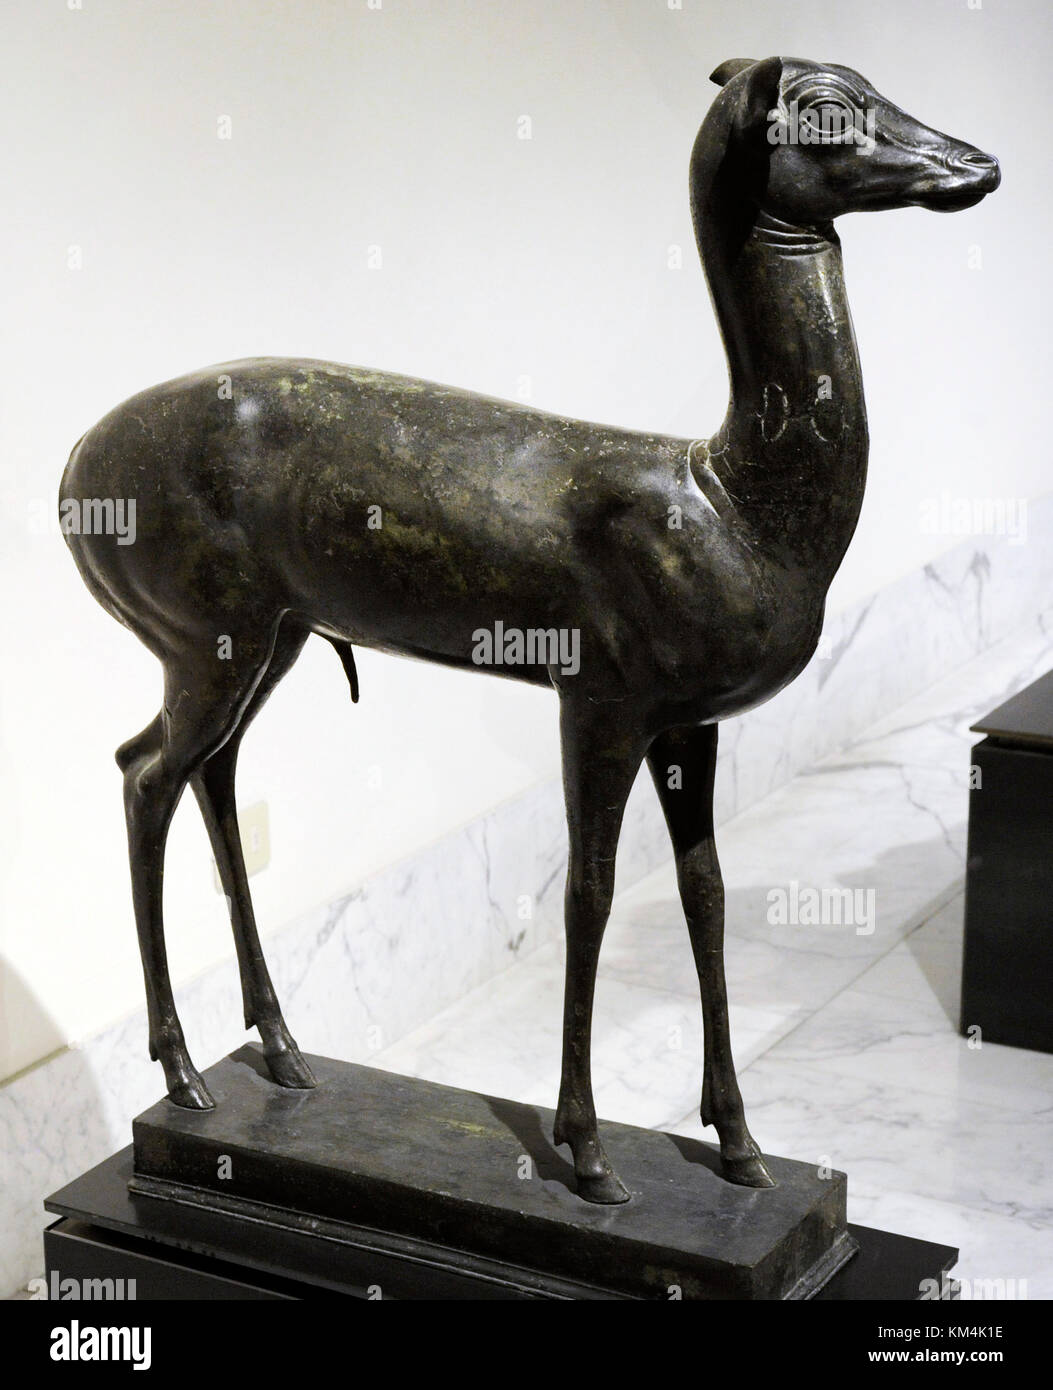 Stag Buck Deer Bronze Sculpture Classic Animal Detailed Figurine Statue Art Deco 